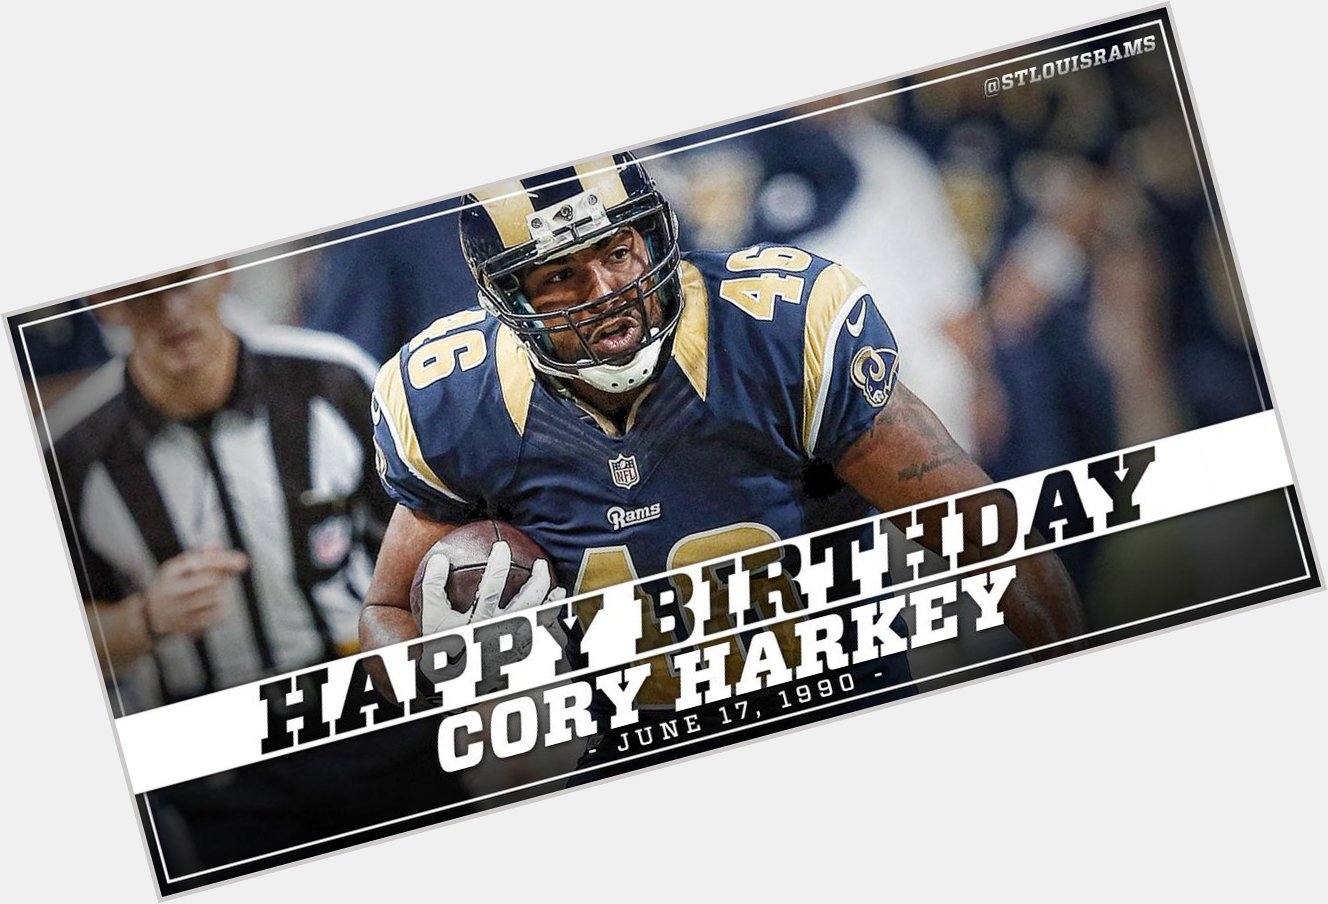 Happy Birthday Cory Harkey! 